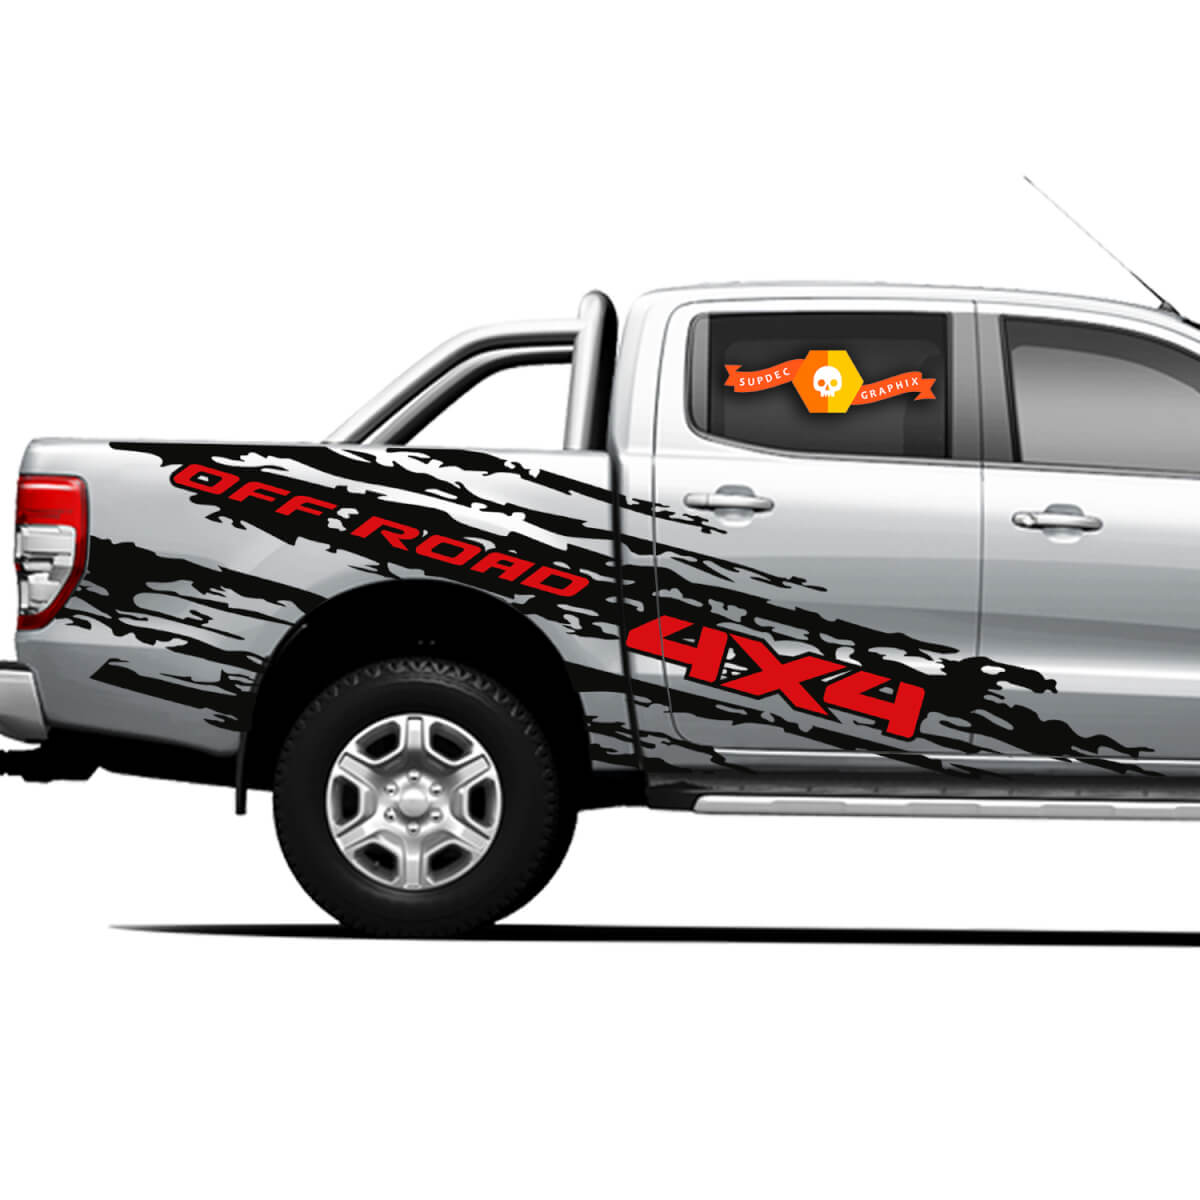 4 × 4 off Road Truck Splash Side Bett Graphics Abziehbilder für Ford Ranger 12